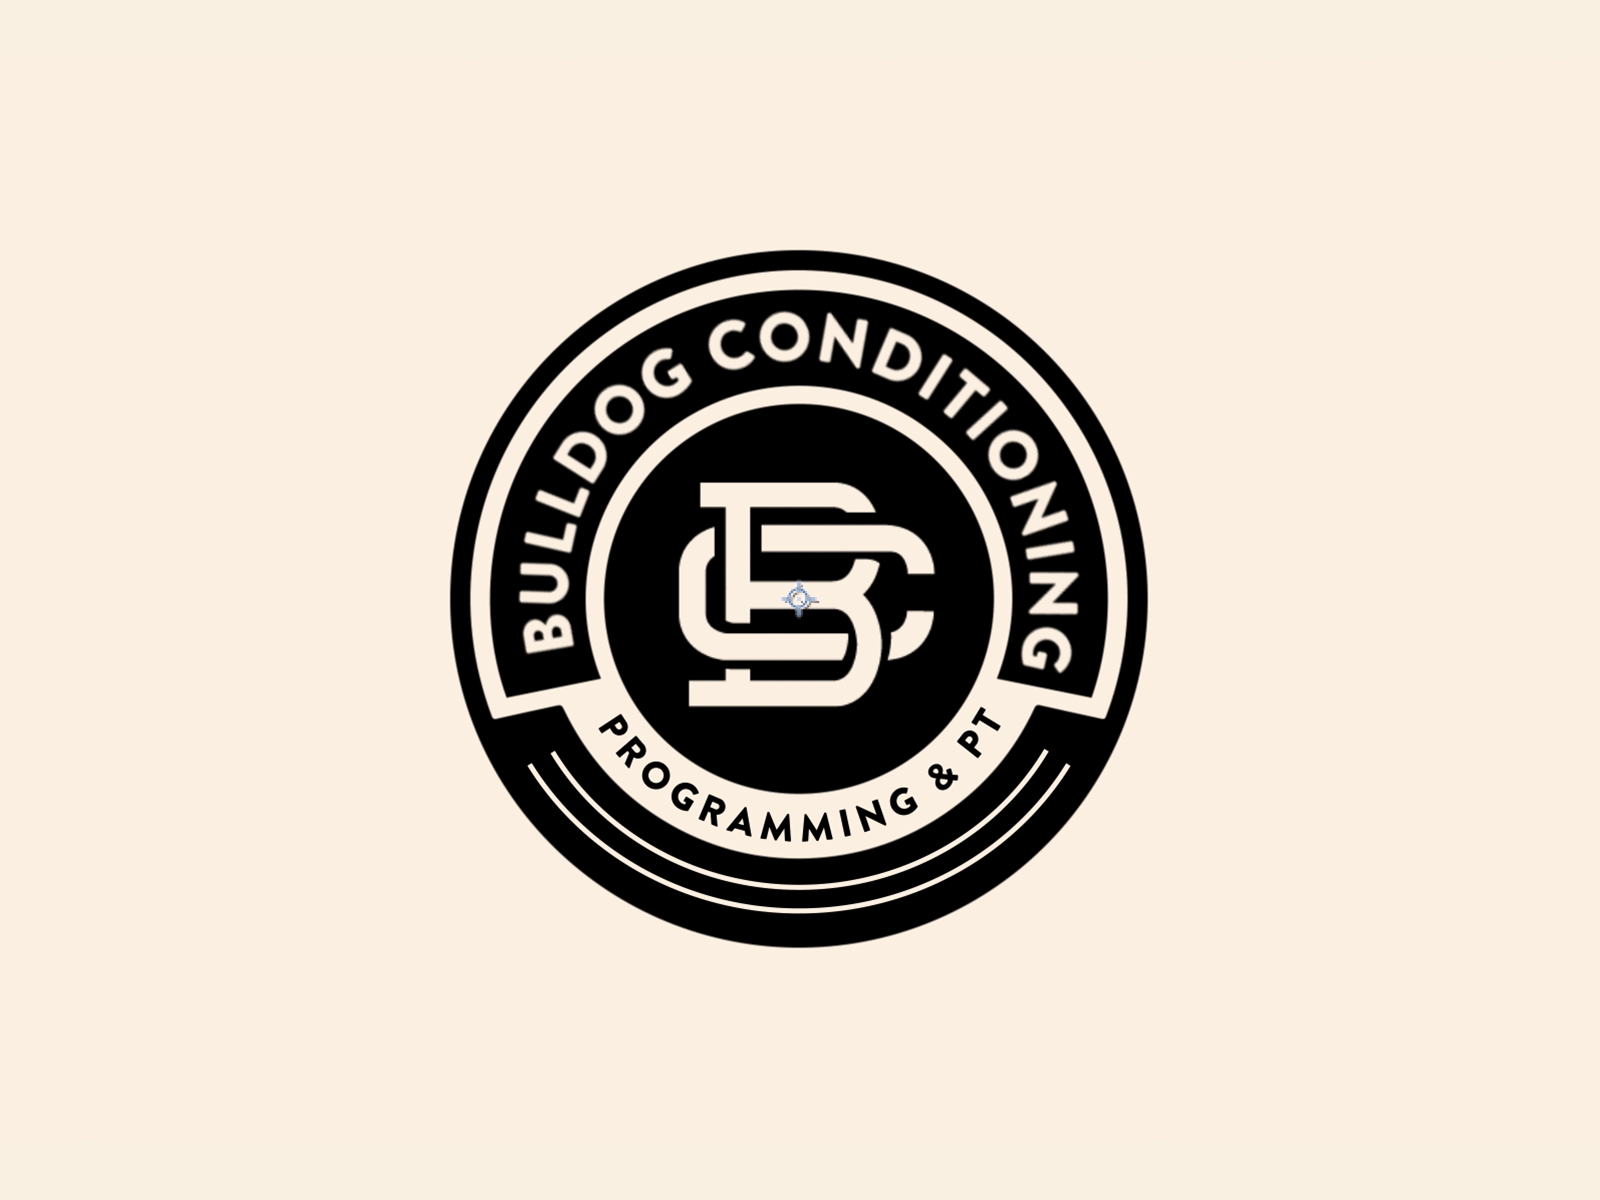 Bulldog Conditioning logo reveal